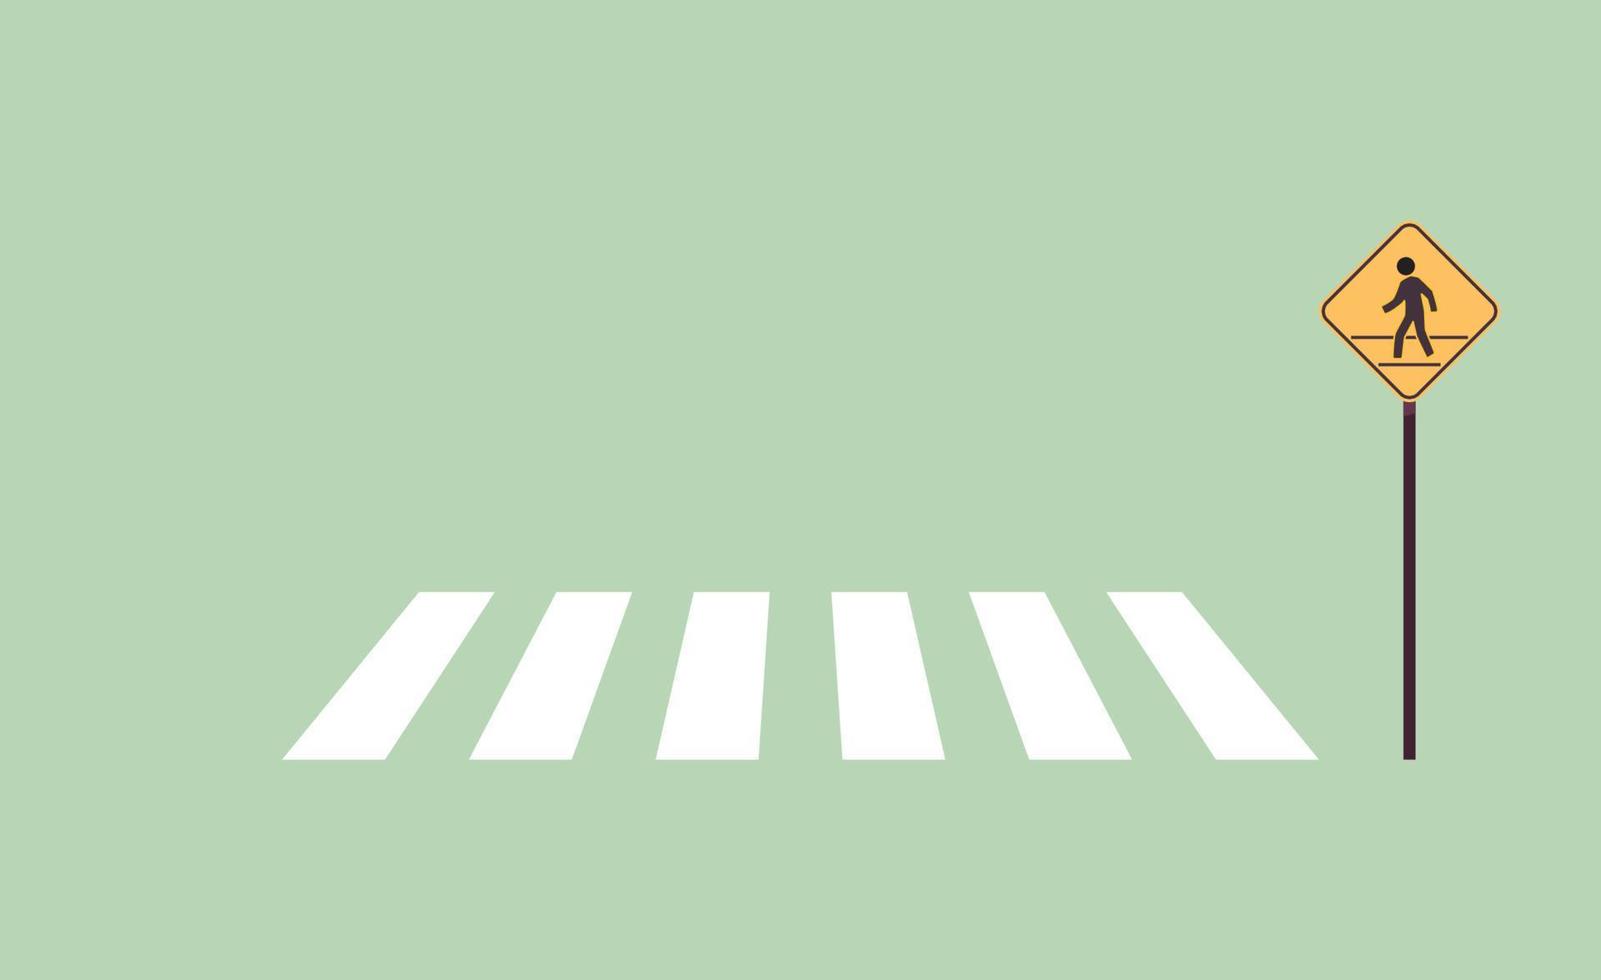 señal peatonal y señal de tráfico ilustración vectorial plana. vector